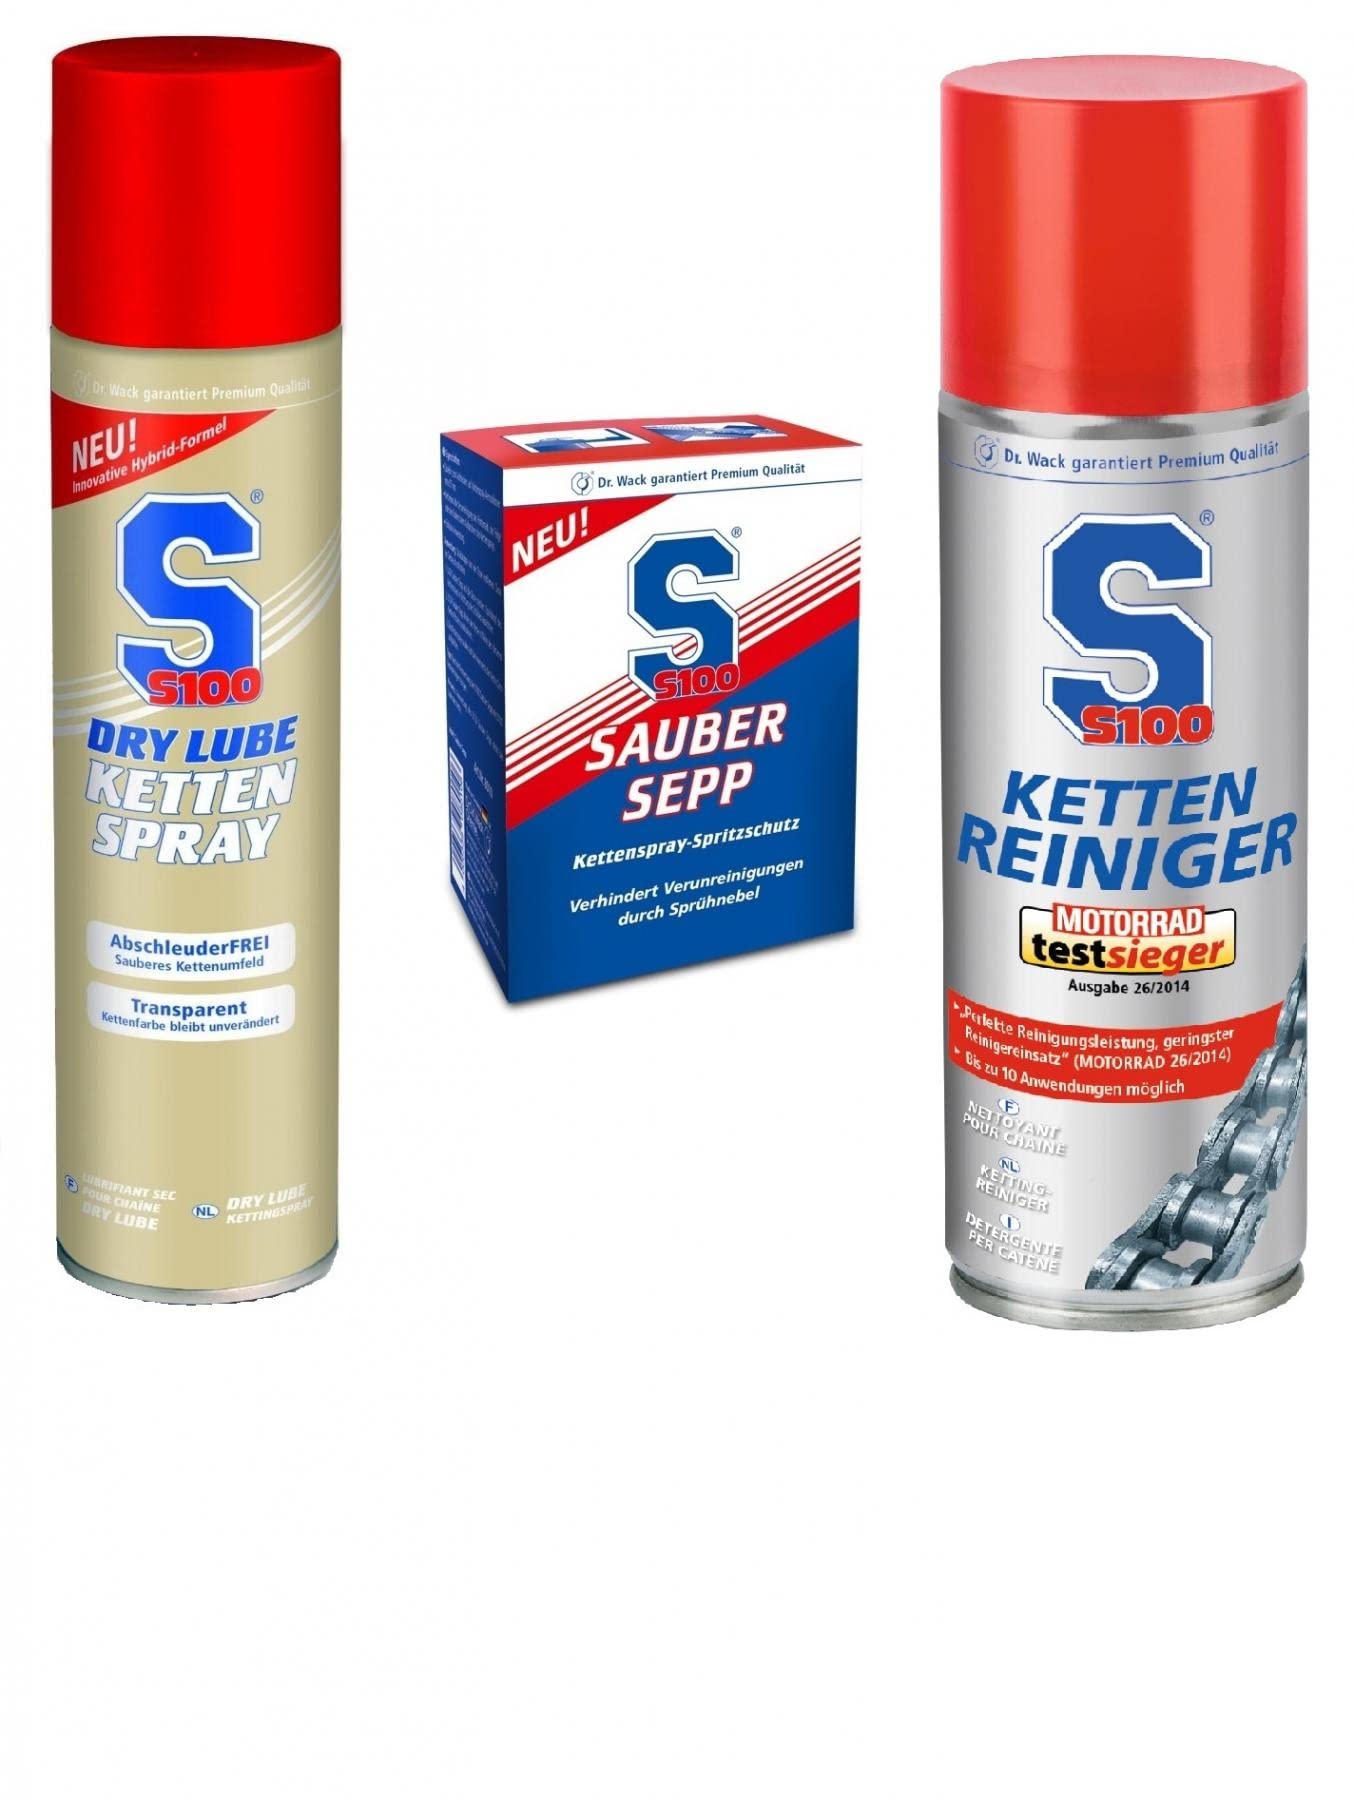 S100 Kettenpflege Set / Kettenspray Dry Lube + Kettenreiniger + Sauber Sepp / Vorteilspack von S100